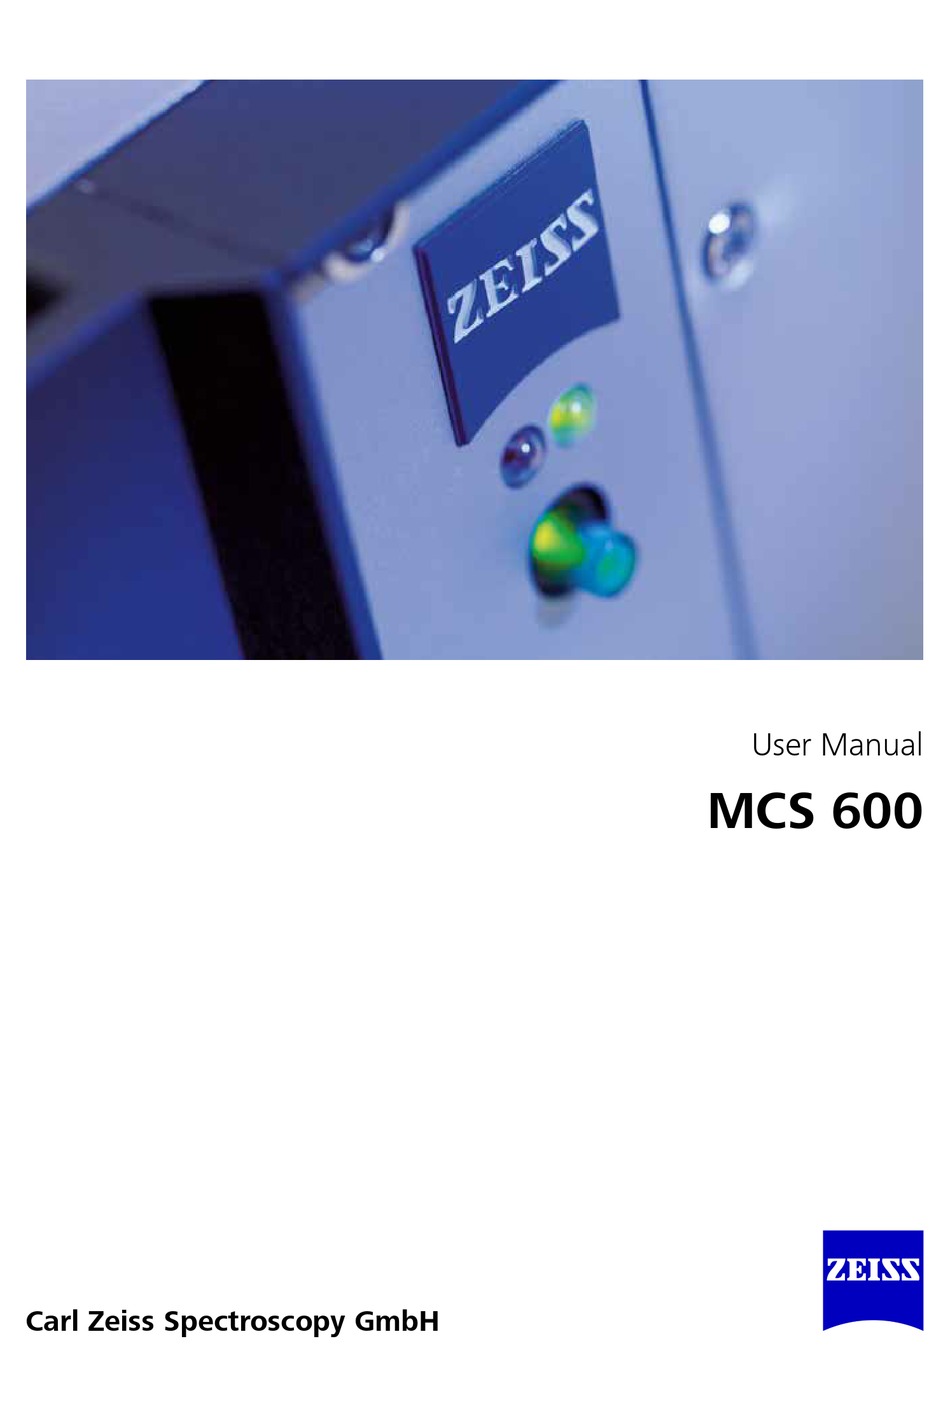 b.13 MCS-600 FCC ID HK9224MCS600, MCS600 FUTURE DOMAIN MCS-600 SCSI